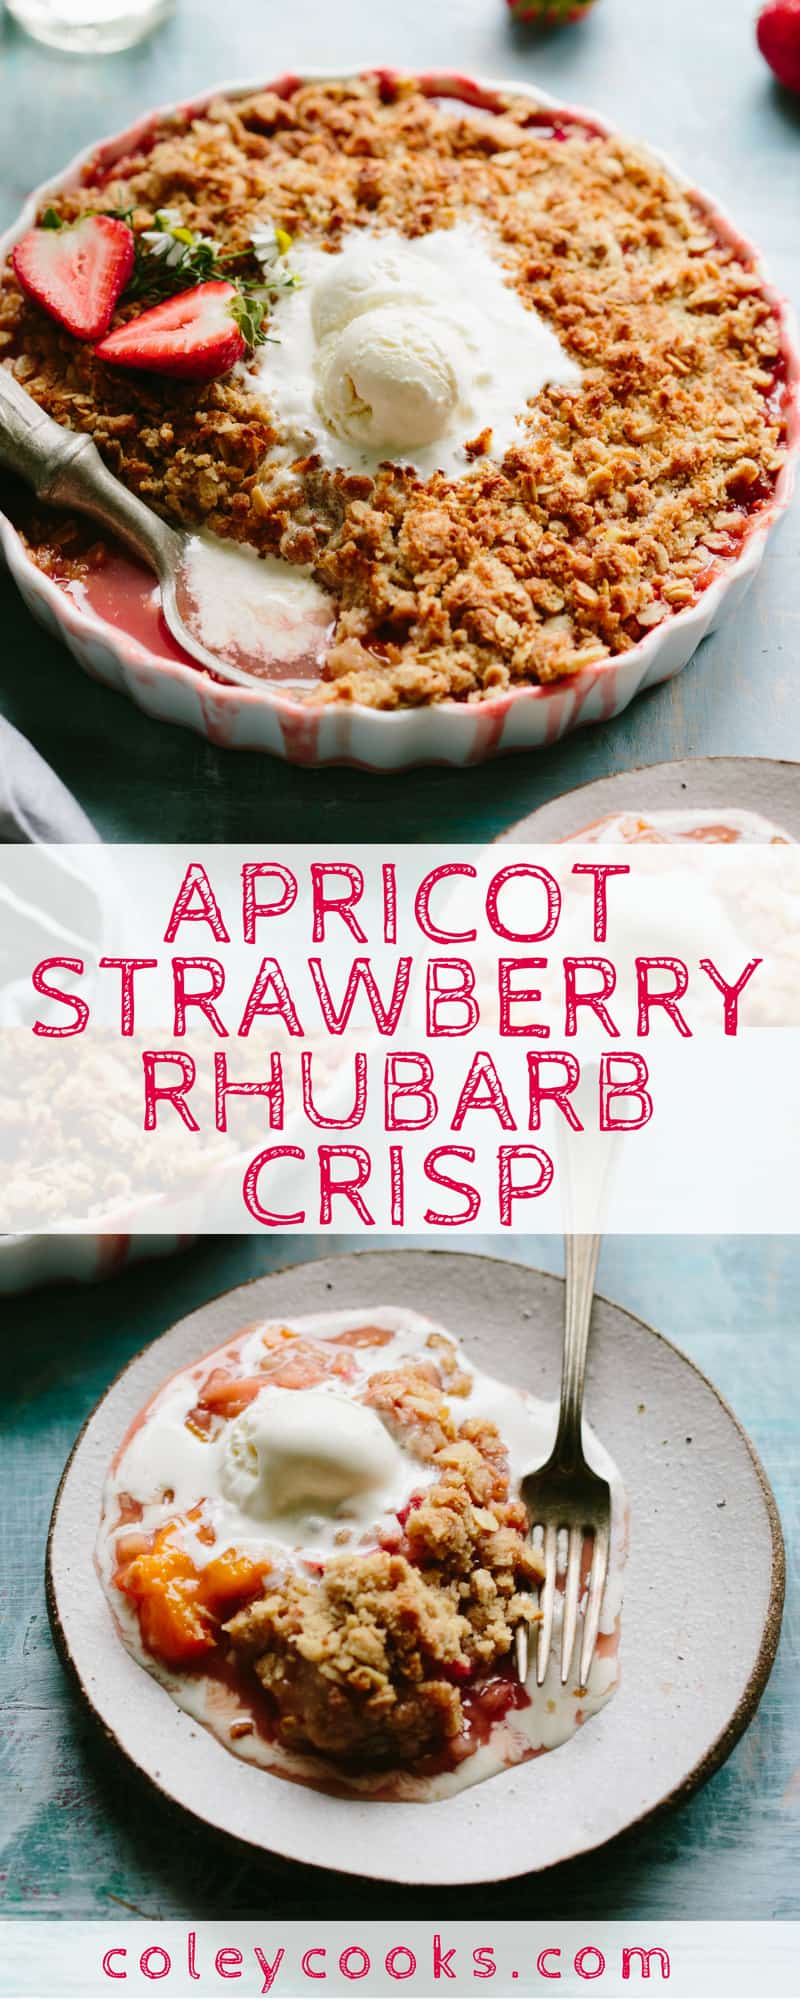 APRICOT STRAWBERRY RHUBARB CRISP | Easy spring / summer dessert recipe! Buttery oat crumble topping over jammy sweet tart fruit. #easy #fruit #crisp #dessert #recipe | ColeyCooks.com